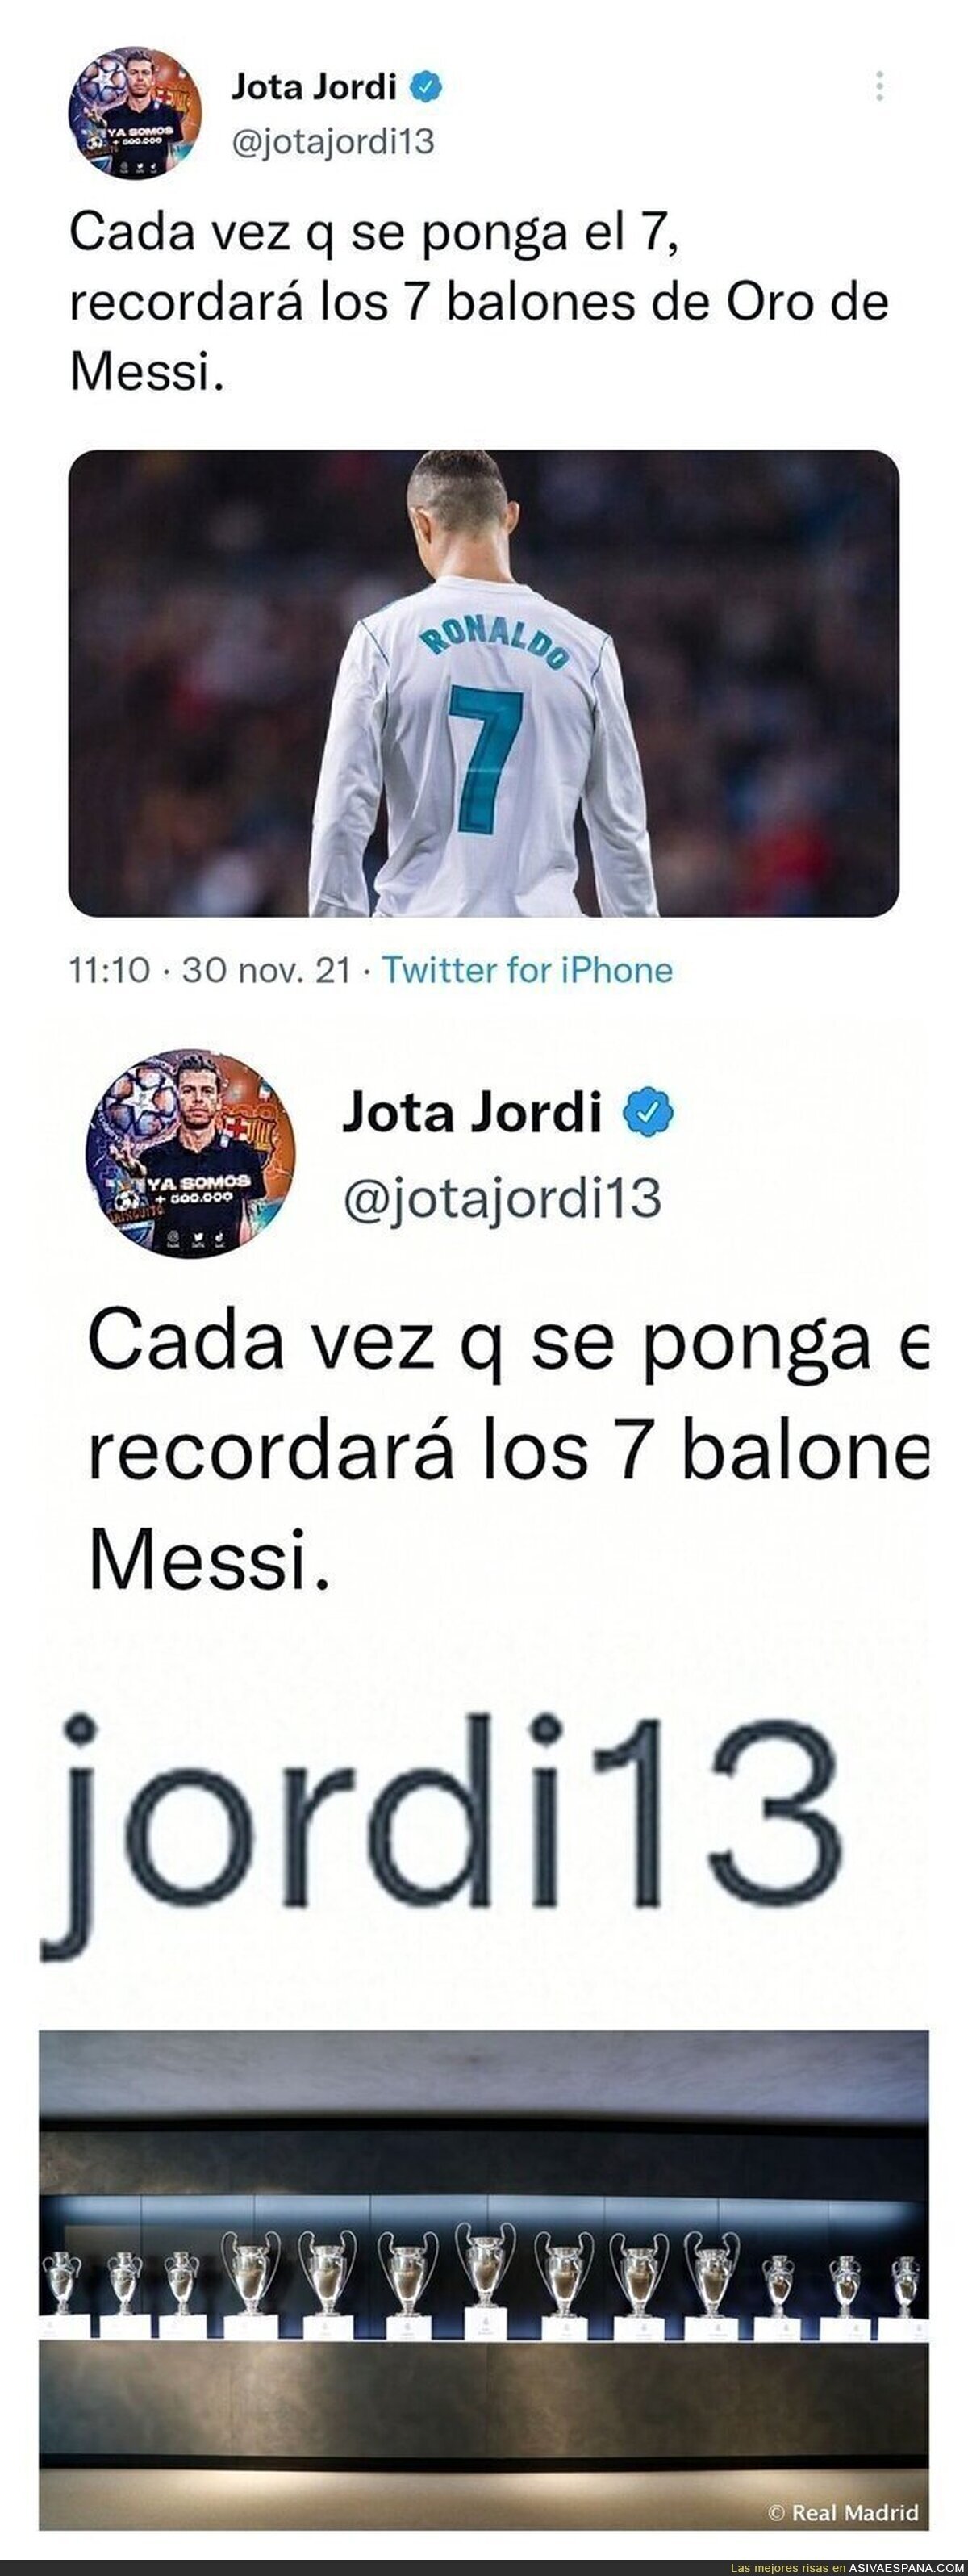 El ridículo monumental de Jota Jordi intentando reírse de Cristiano Ronaldo por el Balón de Oro